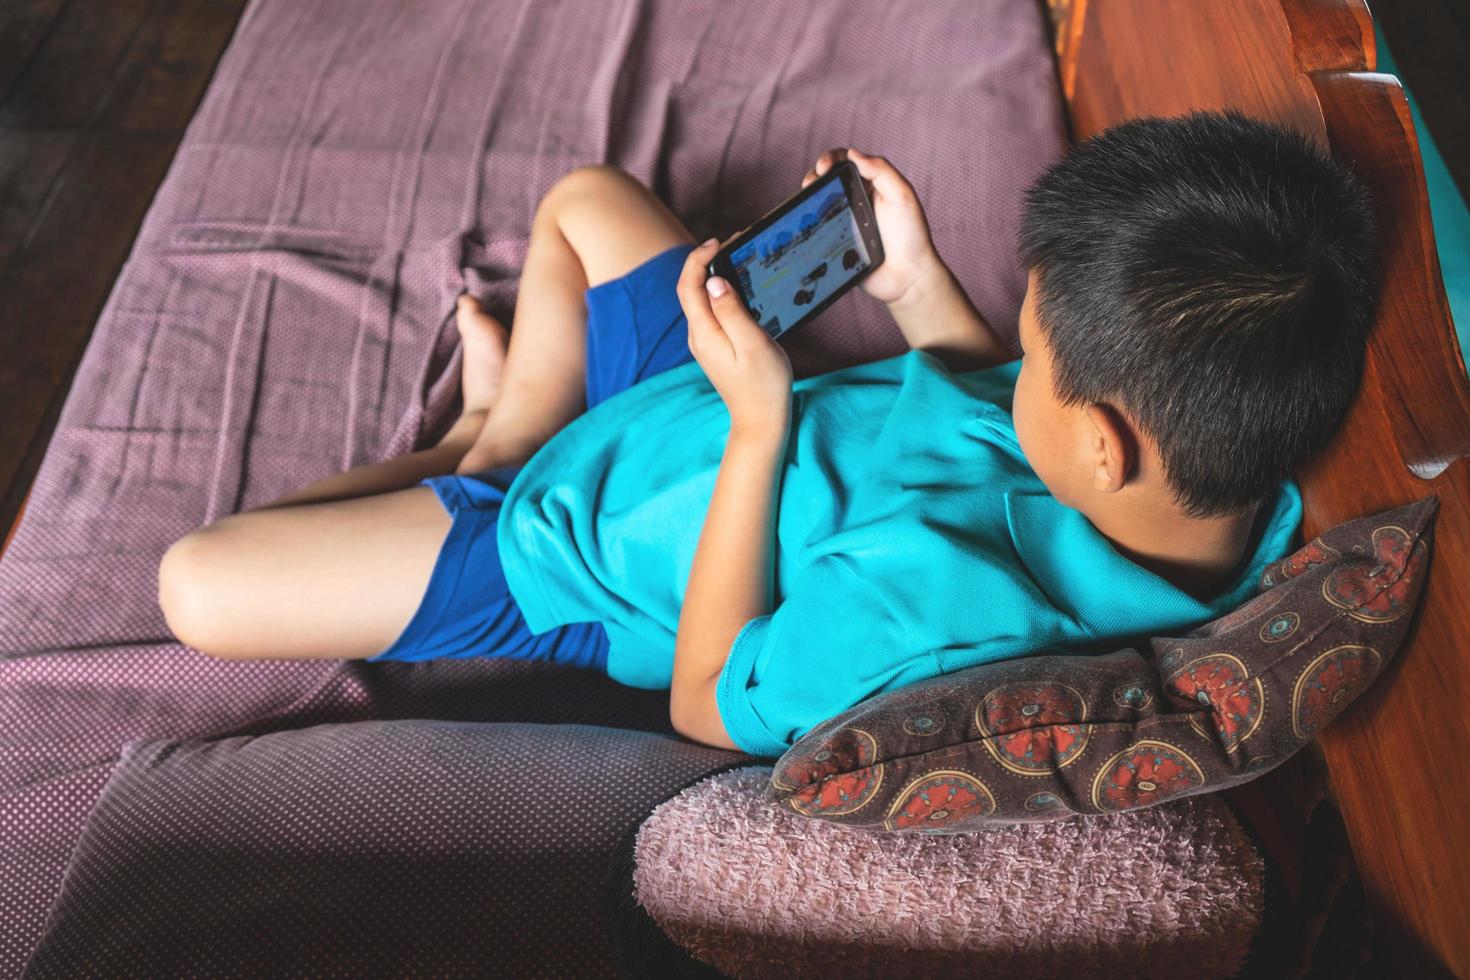 garçon jouant à des jeux sur un téléphone photo